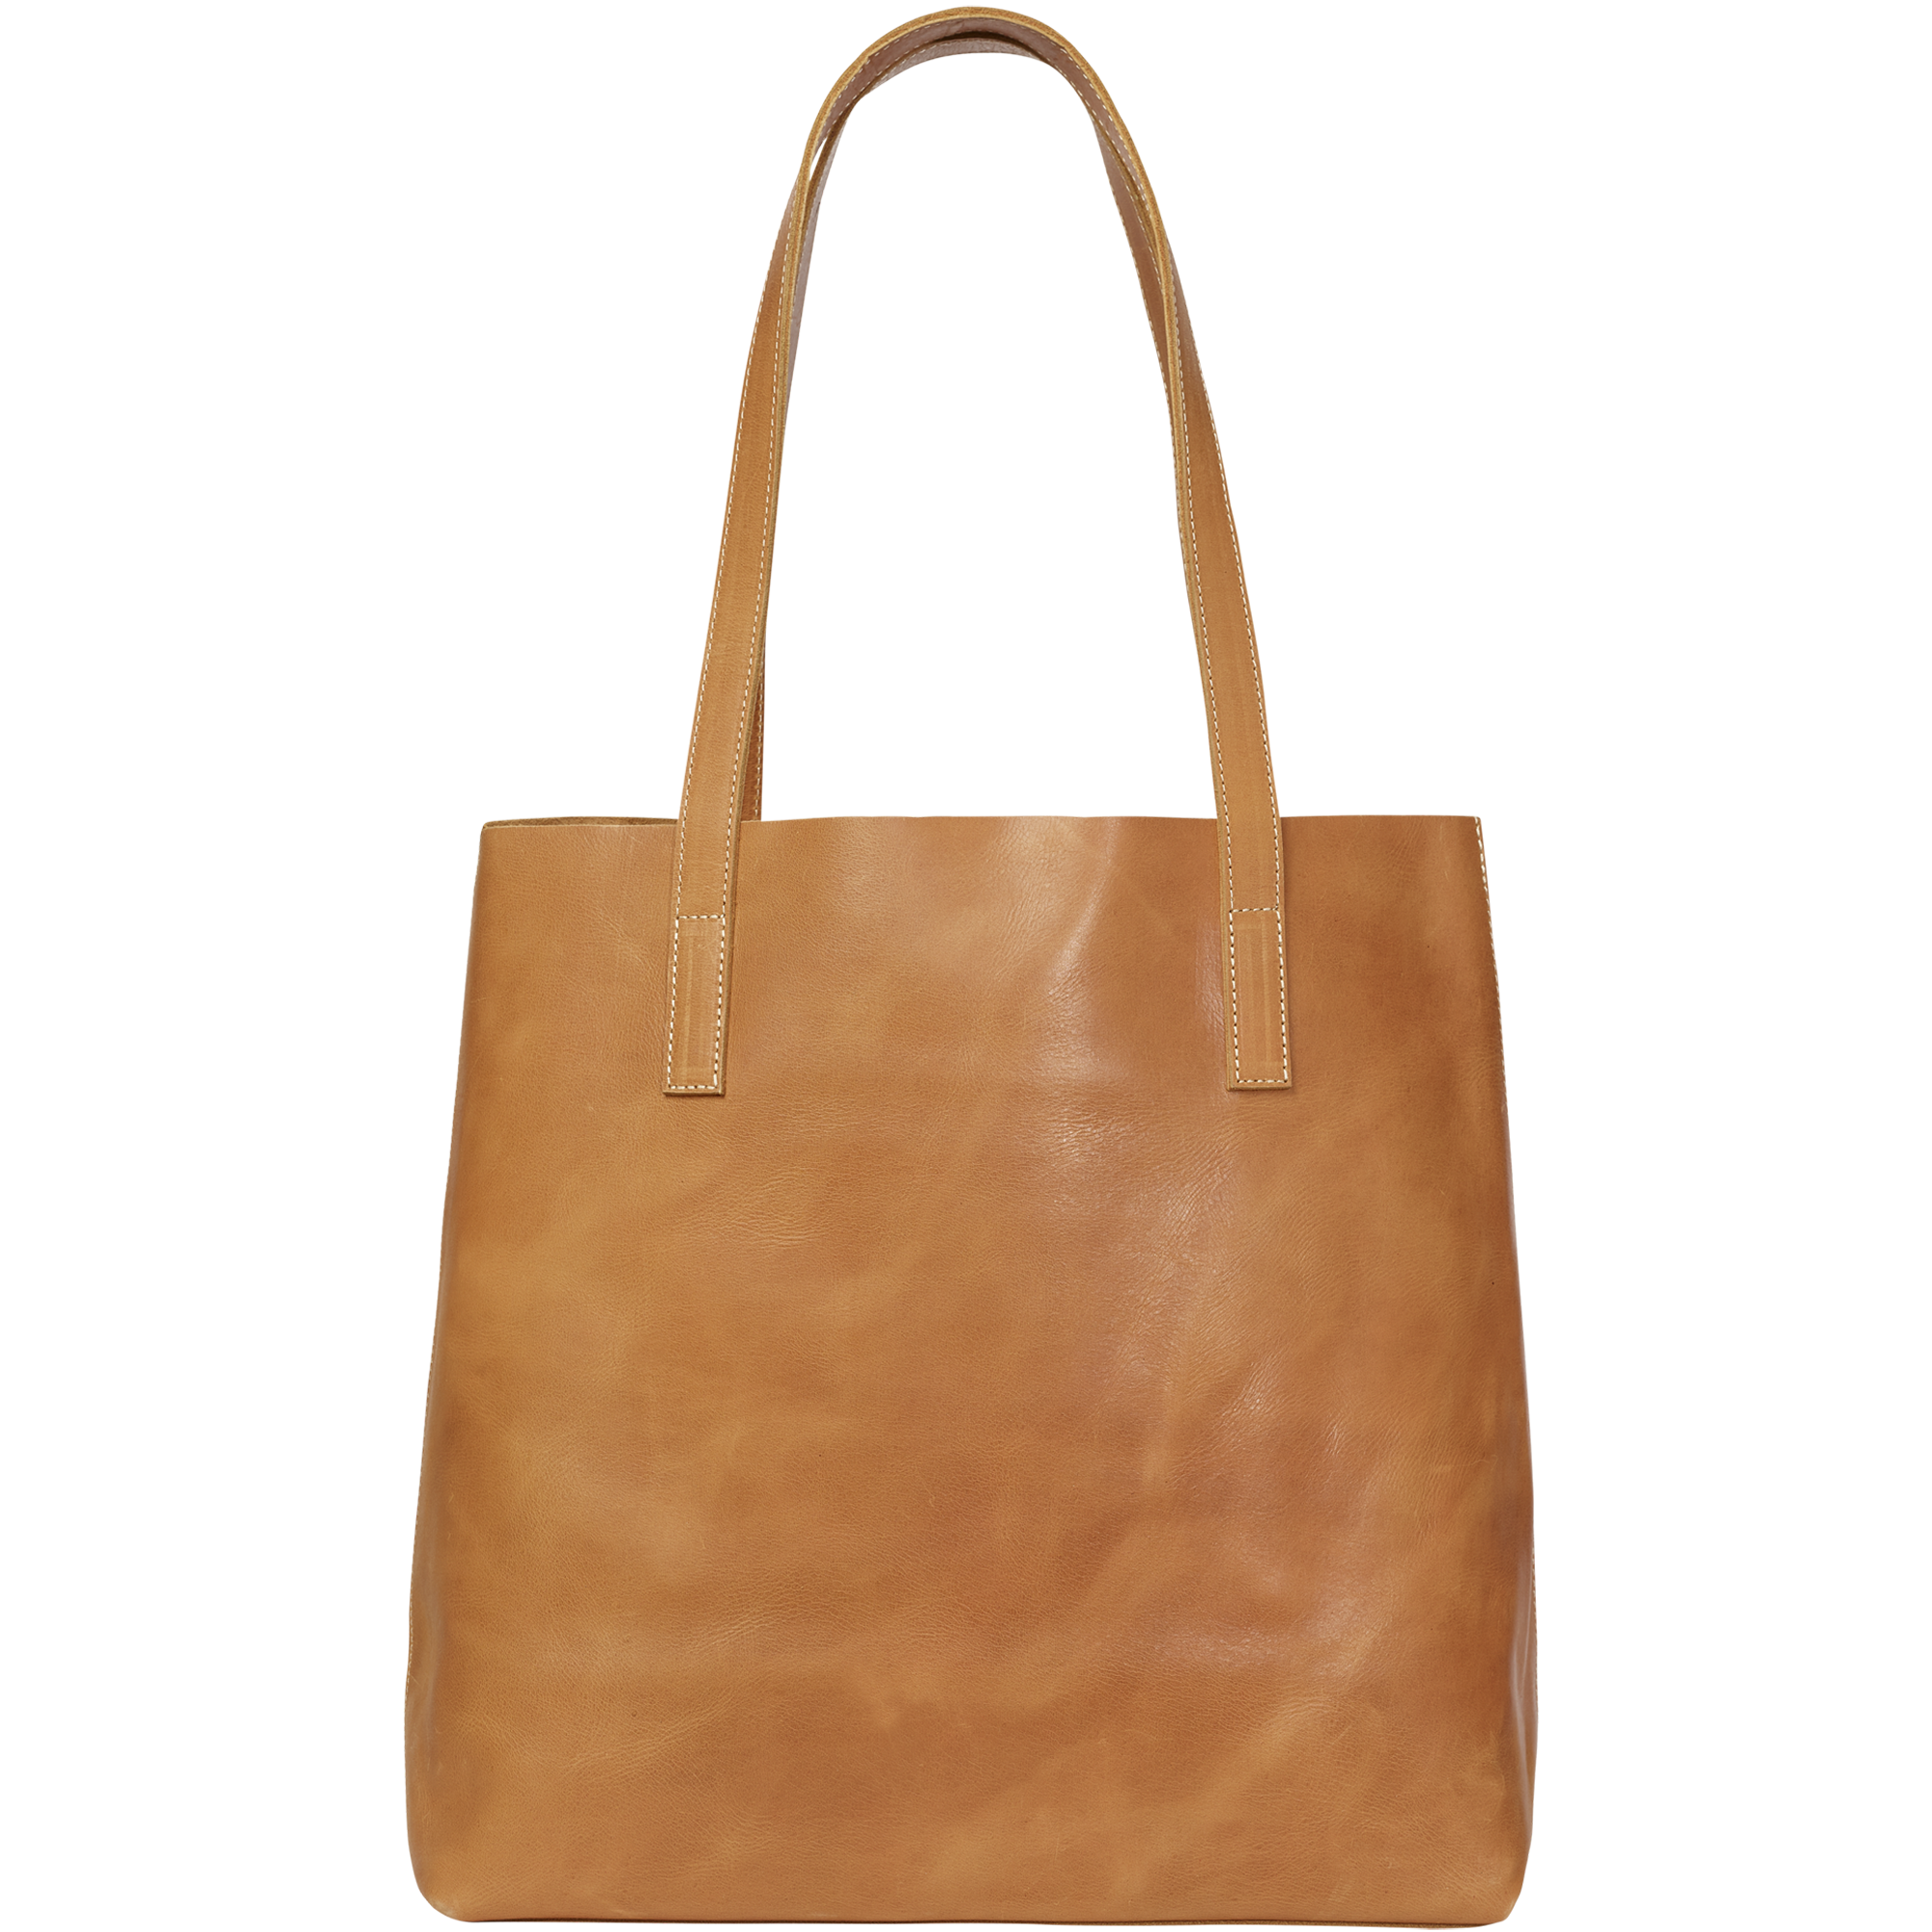 Handbag Light Brown Tote Bag